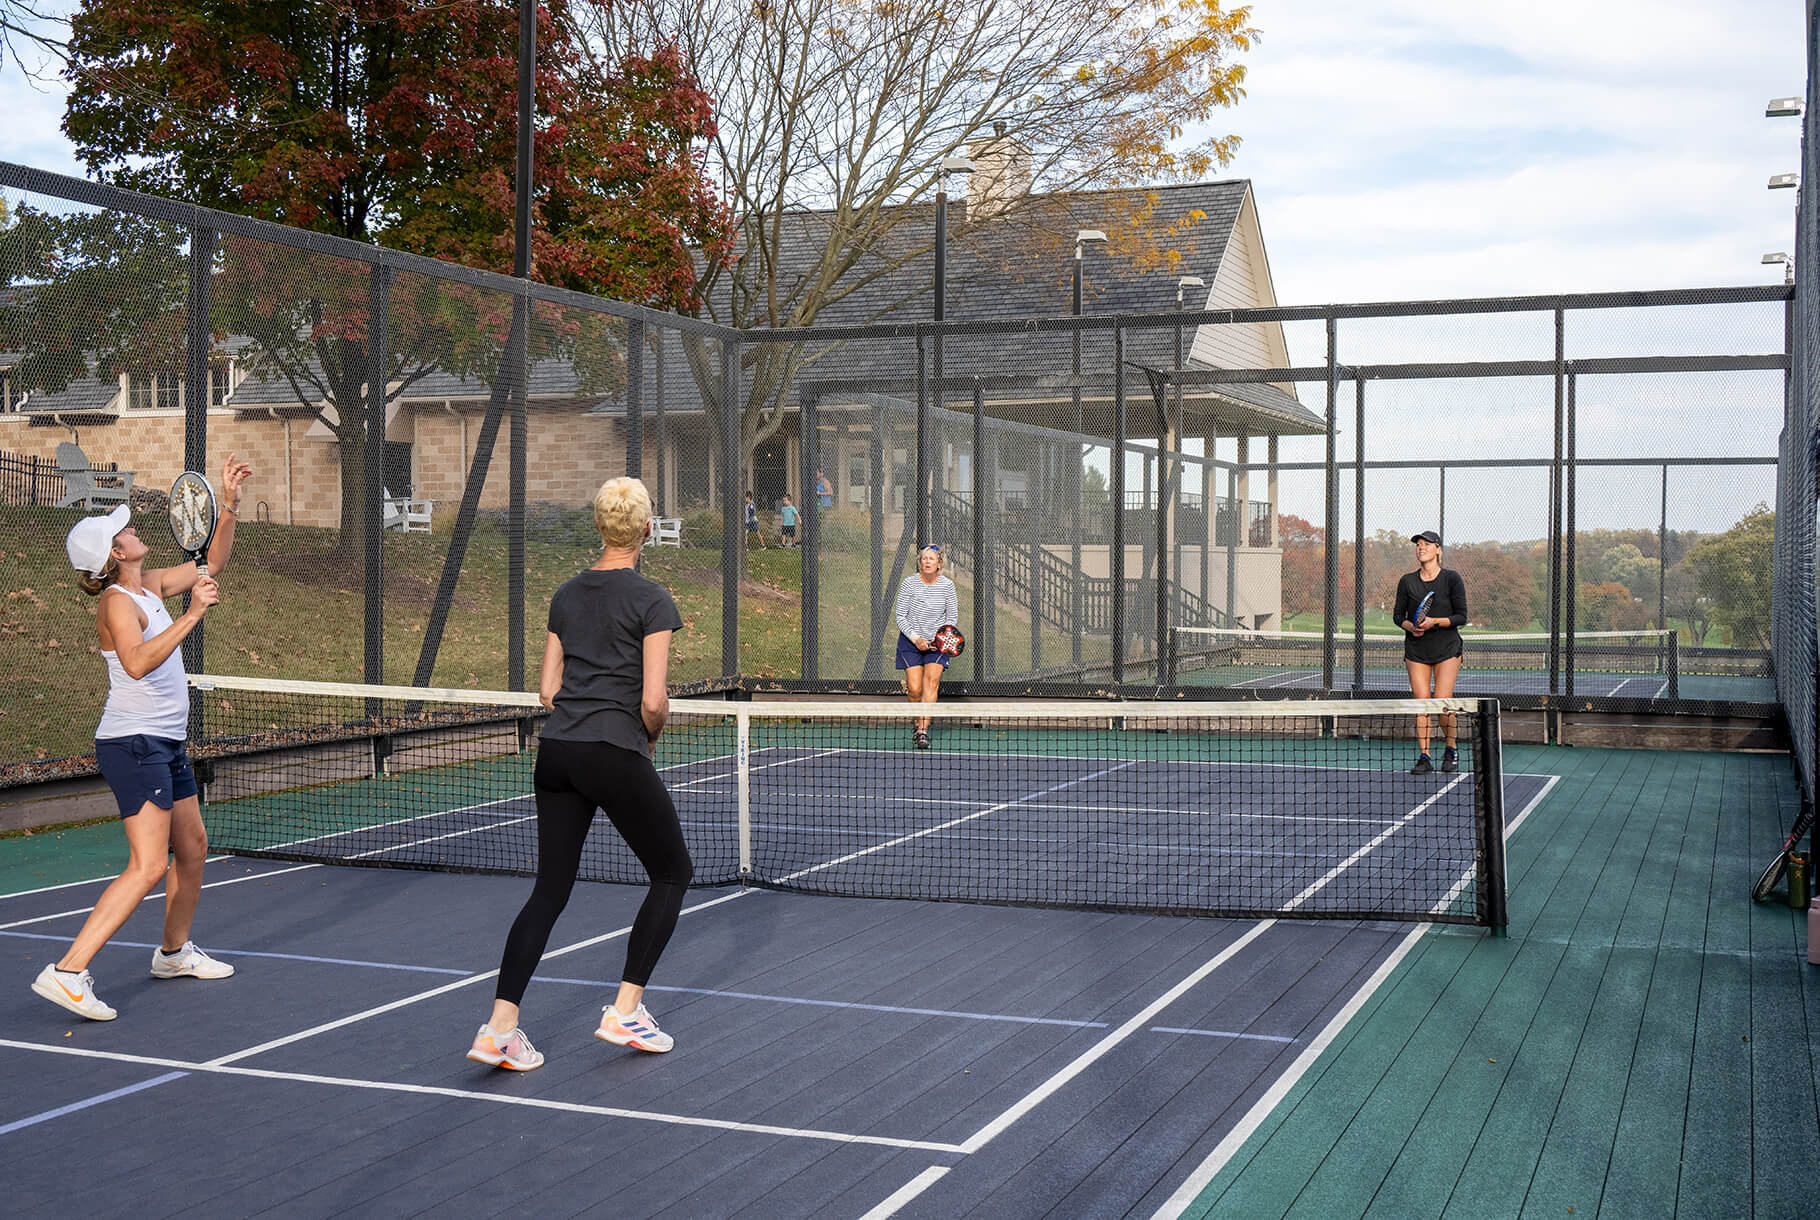 women playing tennis